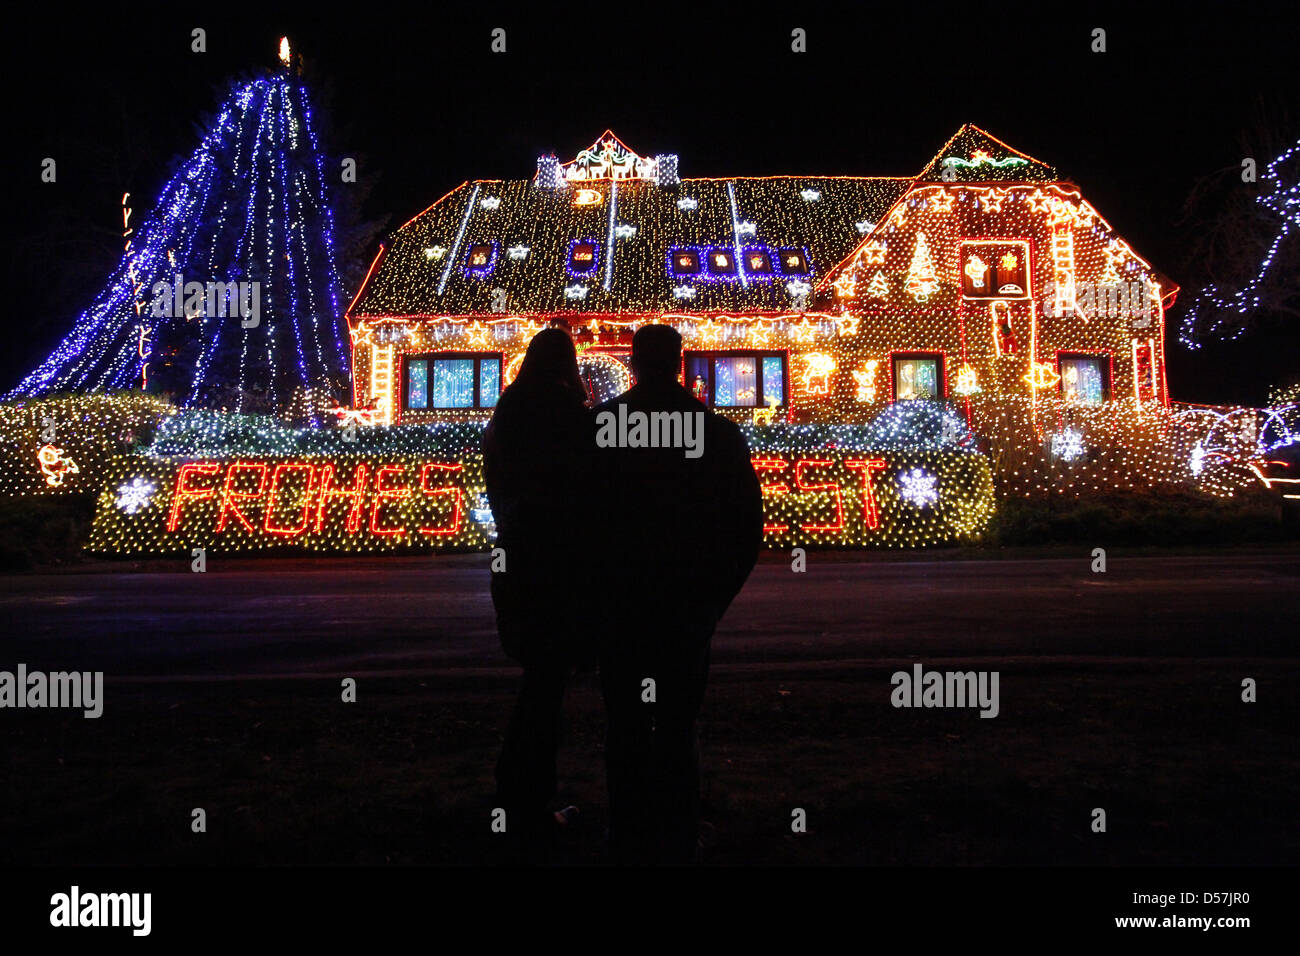 La casa privata della famiglia Vogt in Buecken è decorata con 350.000 lampadine per natale. Buecken, Germania - Foto Stock